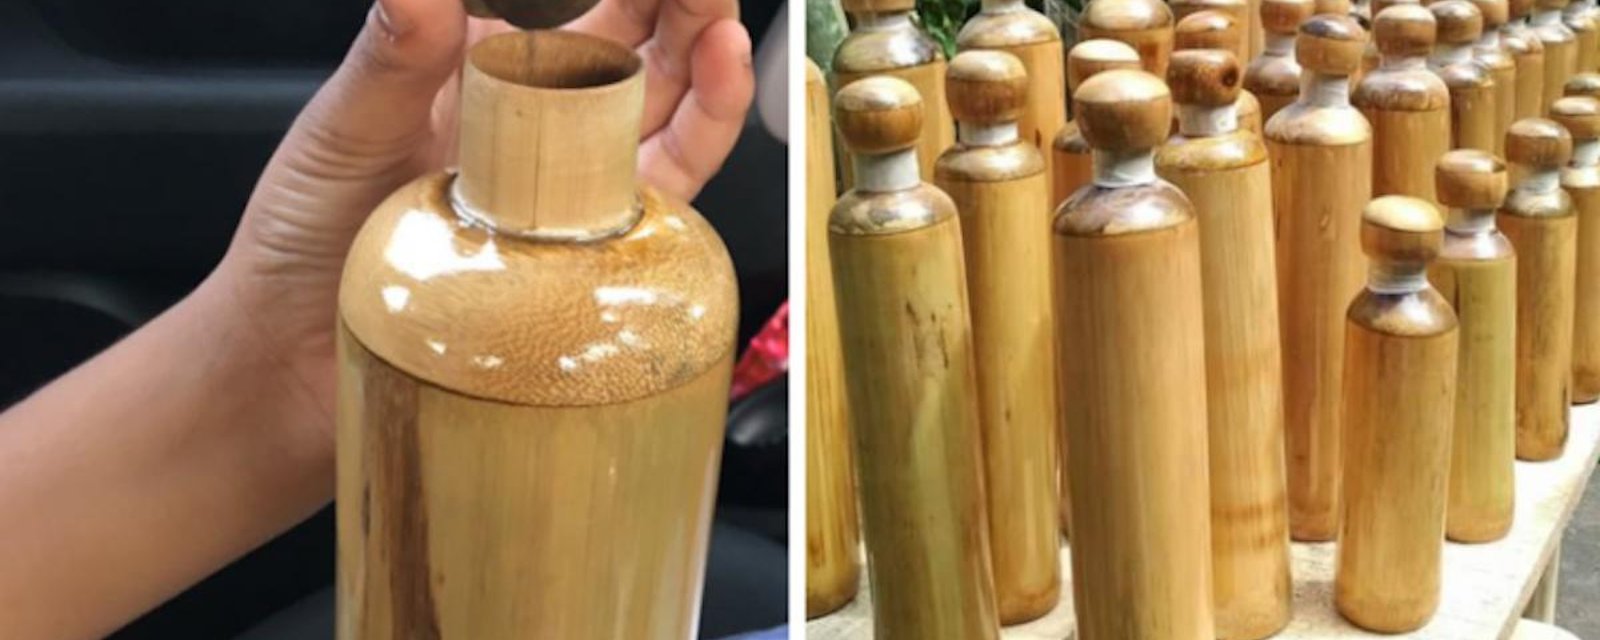 Un Indien fabrique des bouteilles en bambou pour remplacer le plastique